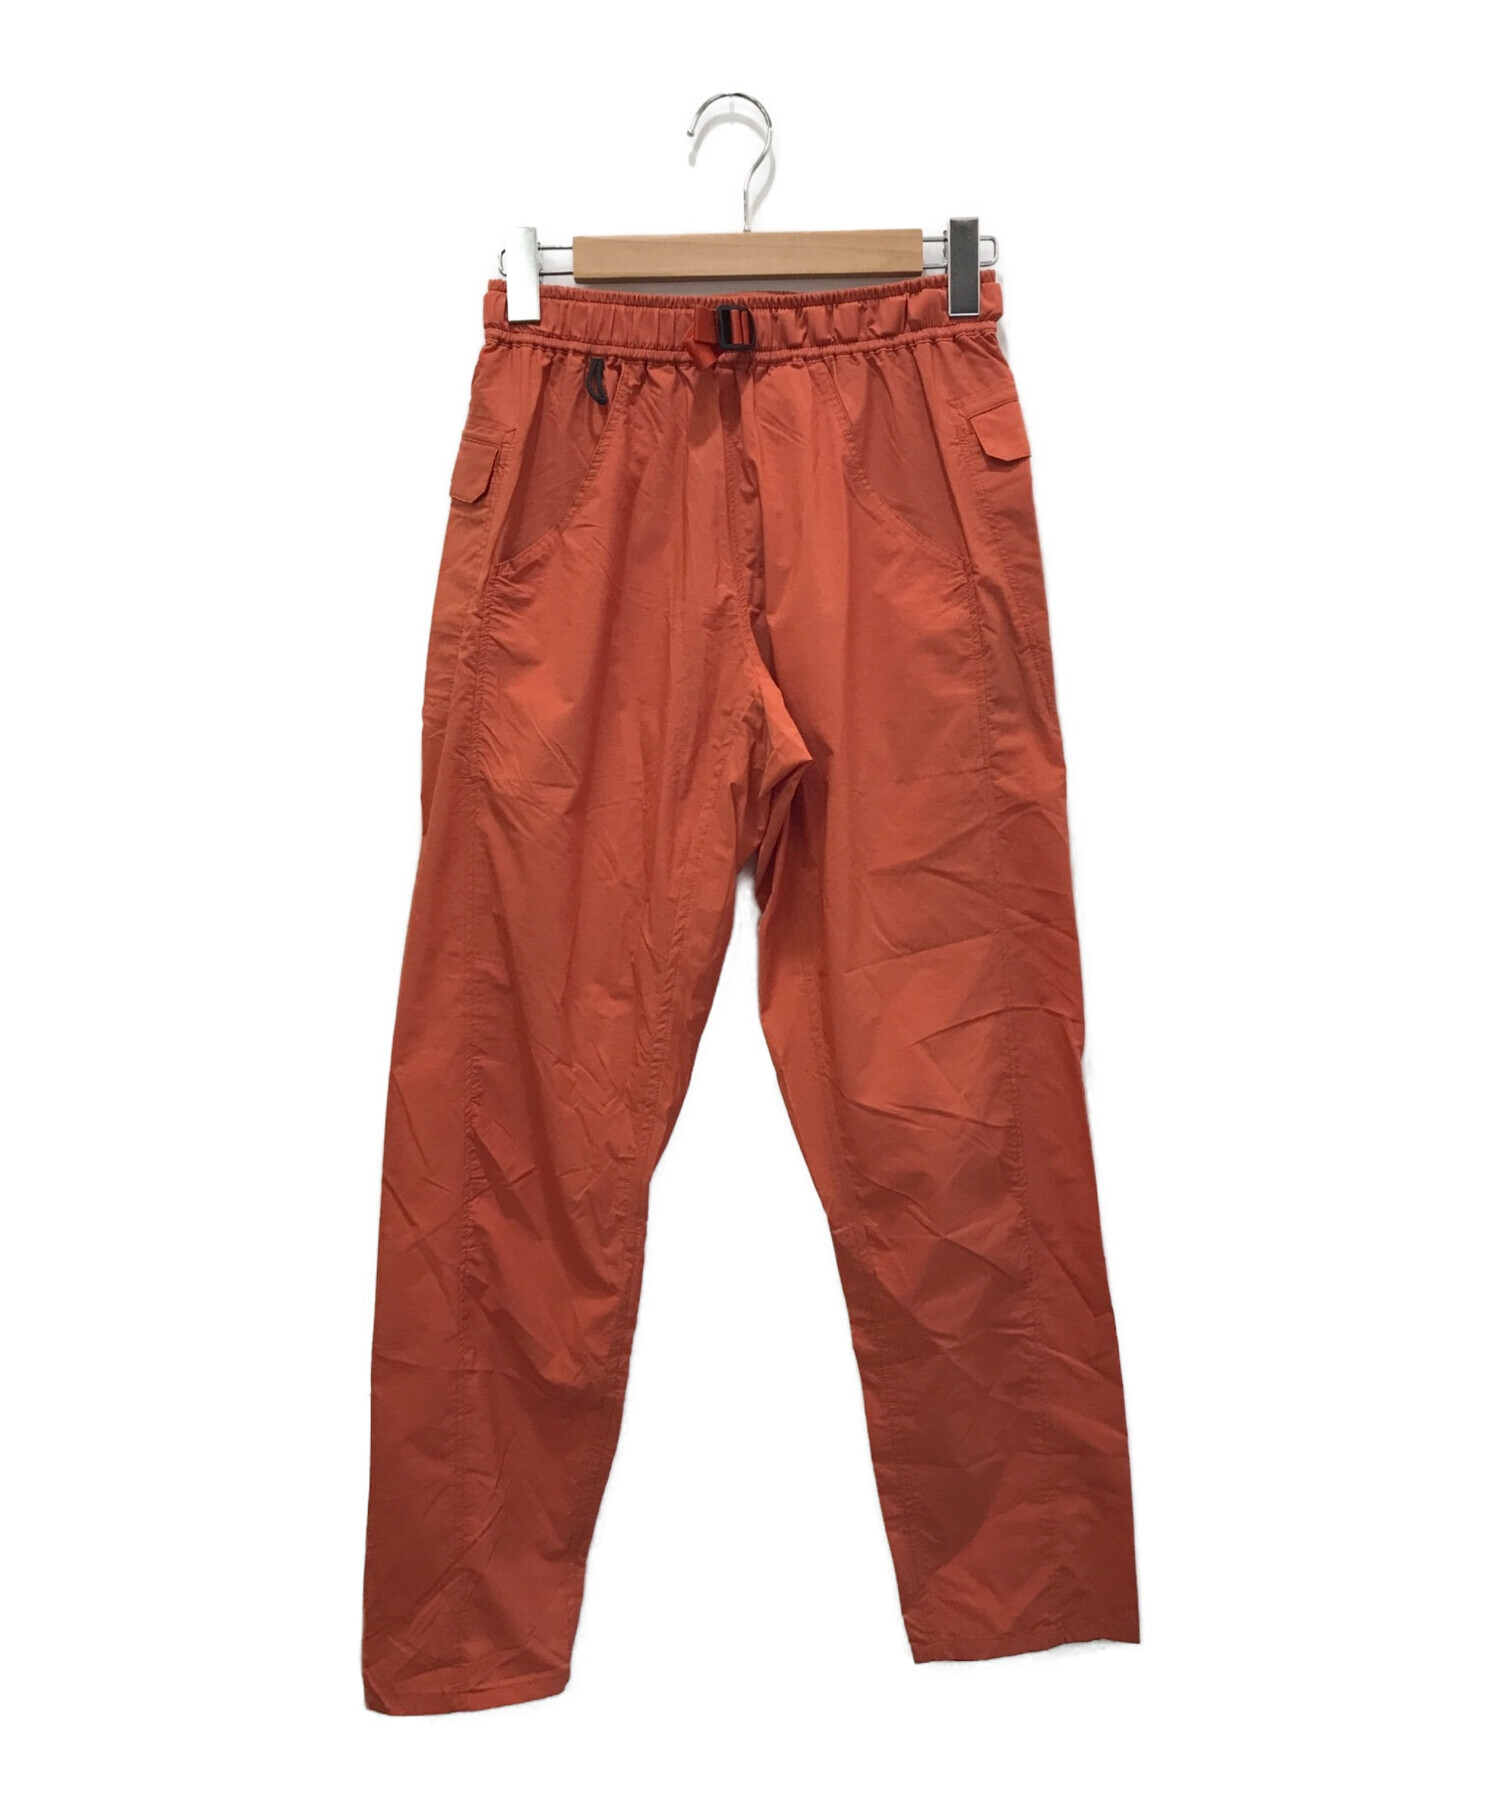 山と道 (ヤマトミチ) Light 5-Pocket Pants オレンジ サイズ:不明（実寸参照）